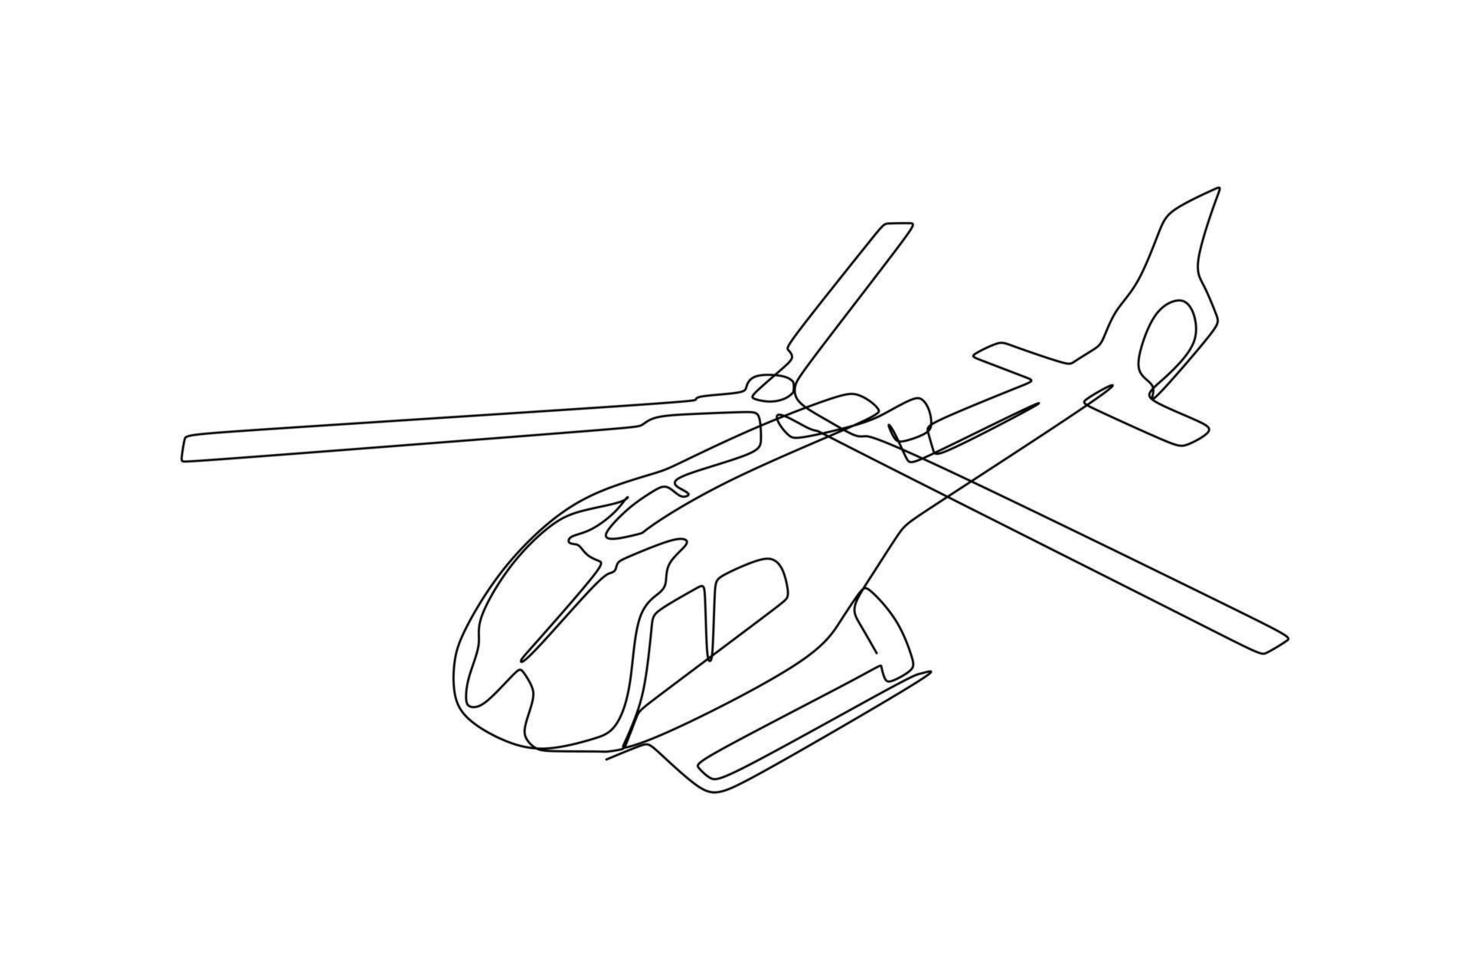 dibujo de una sola línea continua de un helicóptero volando. estilo de dibujo a mano para el concepto de transporte vector